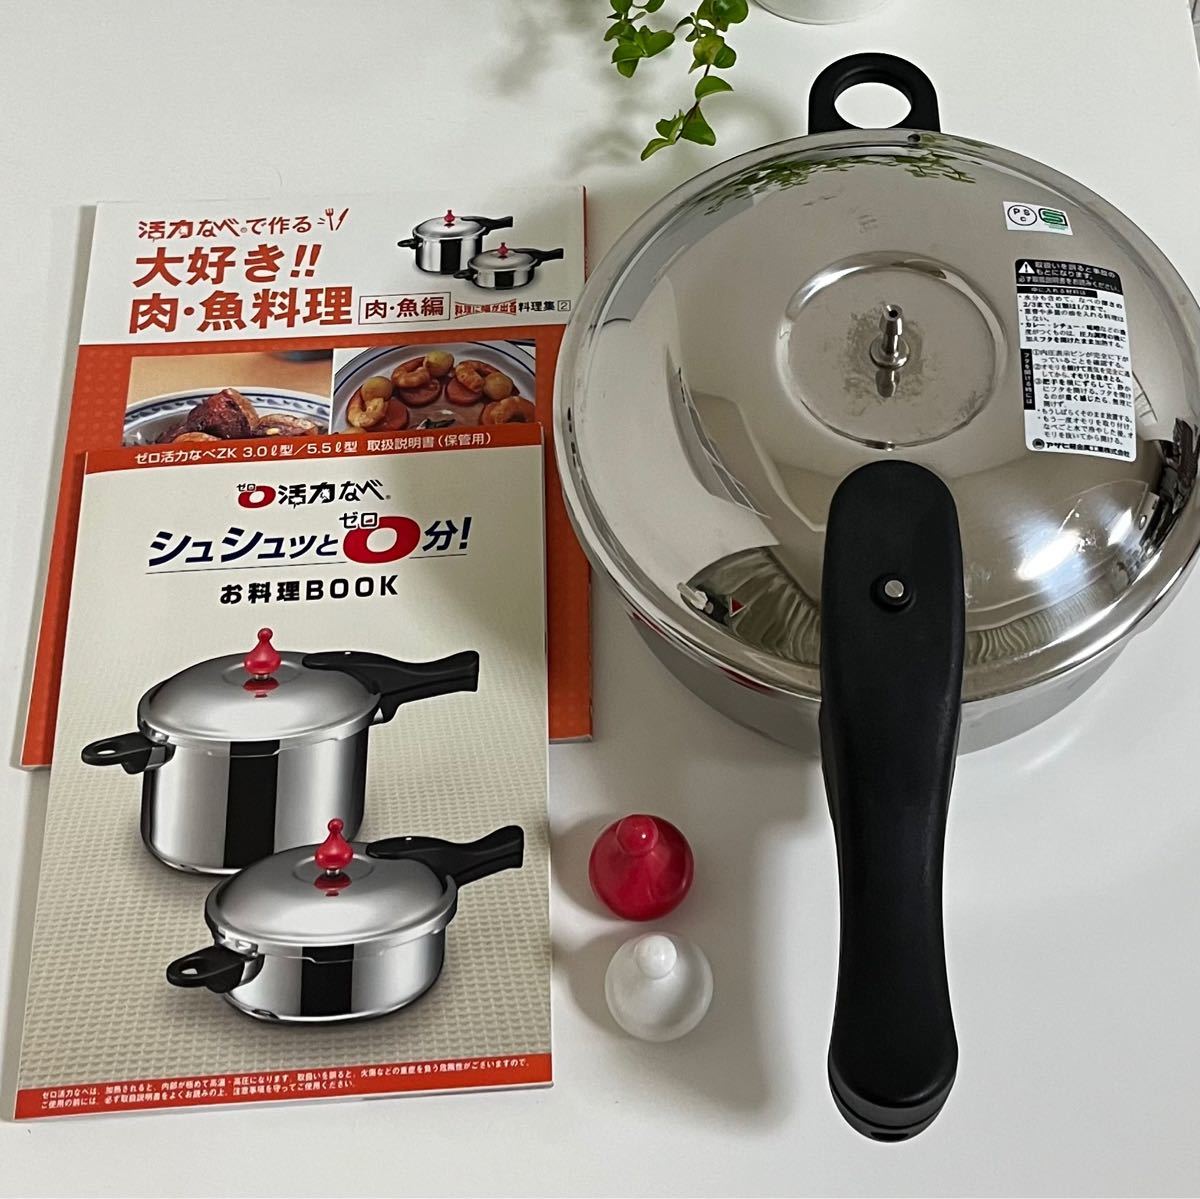 アサヒ軽金属 ゼロ活力鍋 3.0L型 圧力鍋 レシピ本 時短料理 活力なべ 家庭用 IH対応